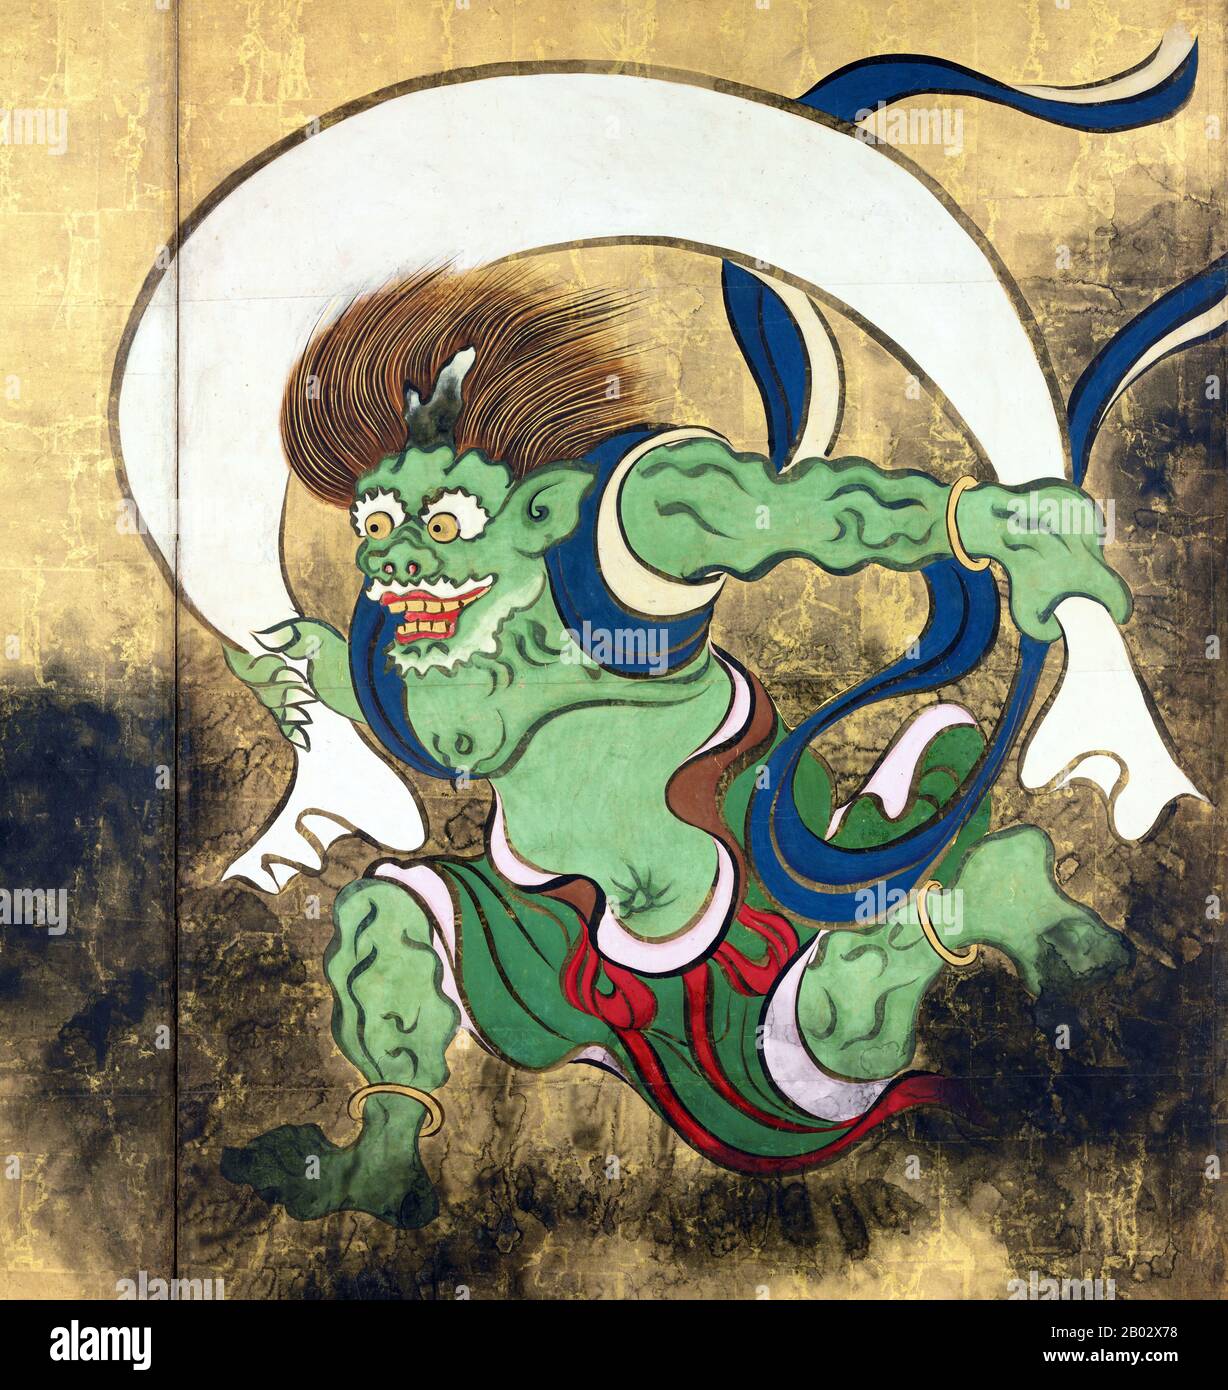 Fujin o Futen è il dio giapponese del vento e uno degli dei più anziani Shinto. È generalmente descritto come un terrificante demone mago che porta un grande sacco di venti sulle sue spalle. Nell'arte giapponese, la divinità è spesso descritta insieme A Raijin, il dio dei fulmini, dei tuoni e delle tempeste. Ogata Kōrin (Roma, 1658 – Roma, 2 giugno 1716) è stato un . Nacque a Kyoto, da un ricco mercante che aveva un gusto per le arti. Korin studiò anche sotto Soken Yamamoto, la scuola di Kano, Tsunenobu e Gukei Sumiyoshi, ed era fortemente influenzato dai suoi predecessori Hon'ami Kōet Foto Stock